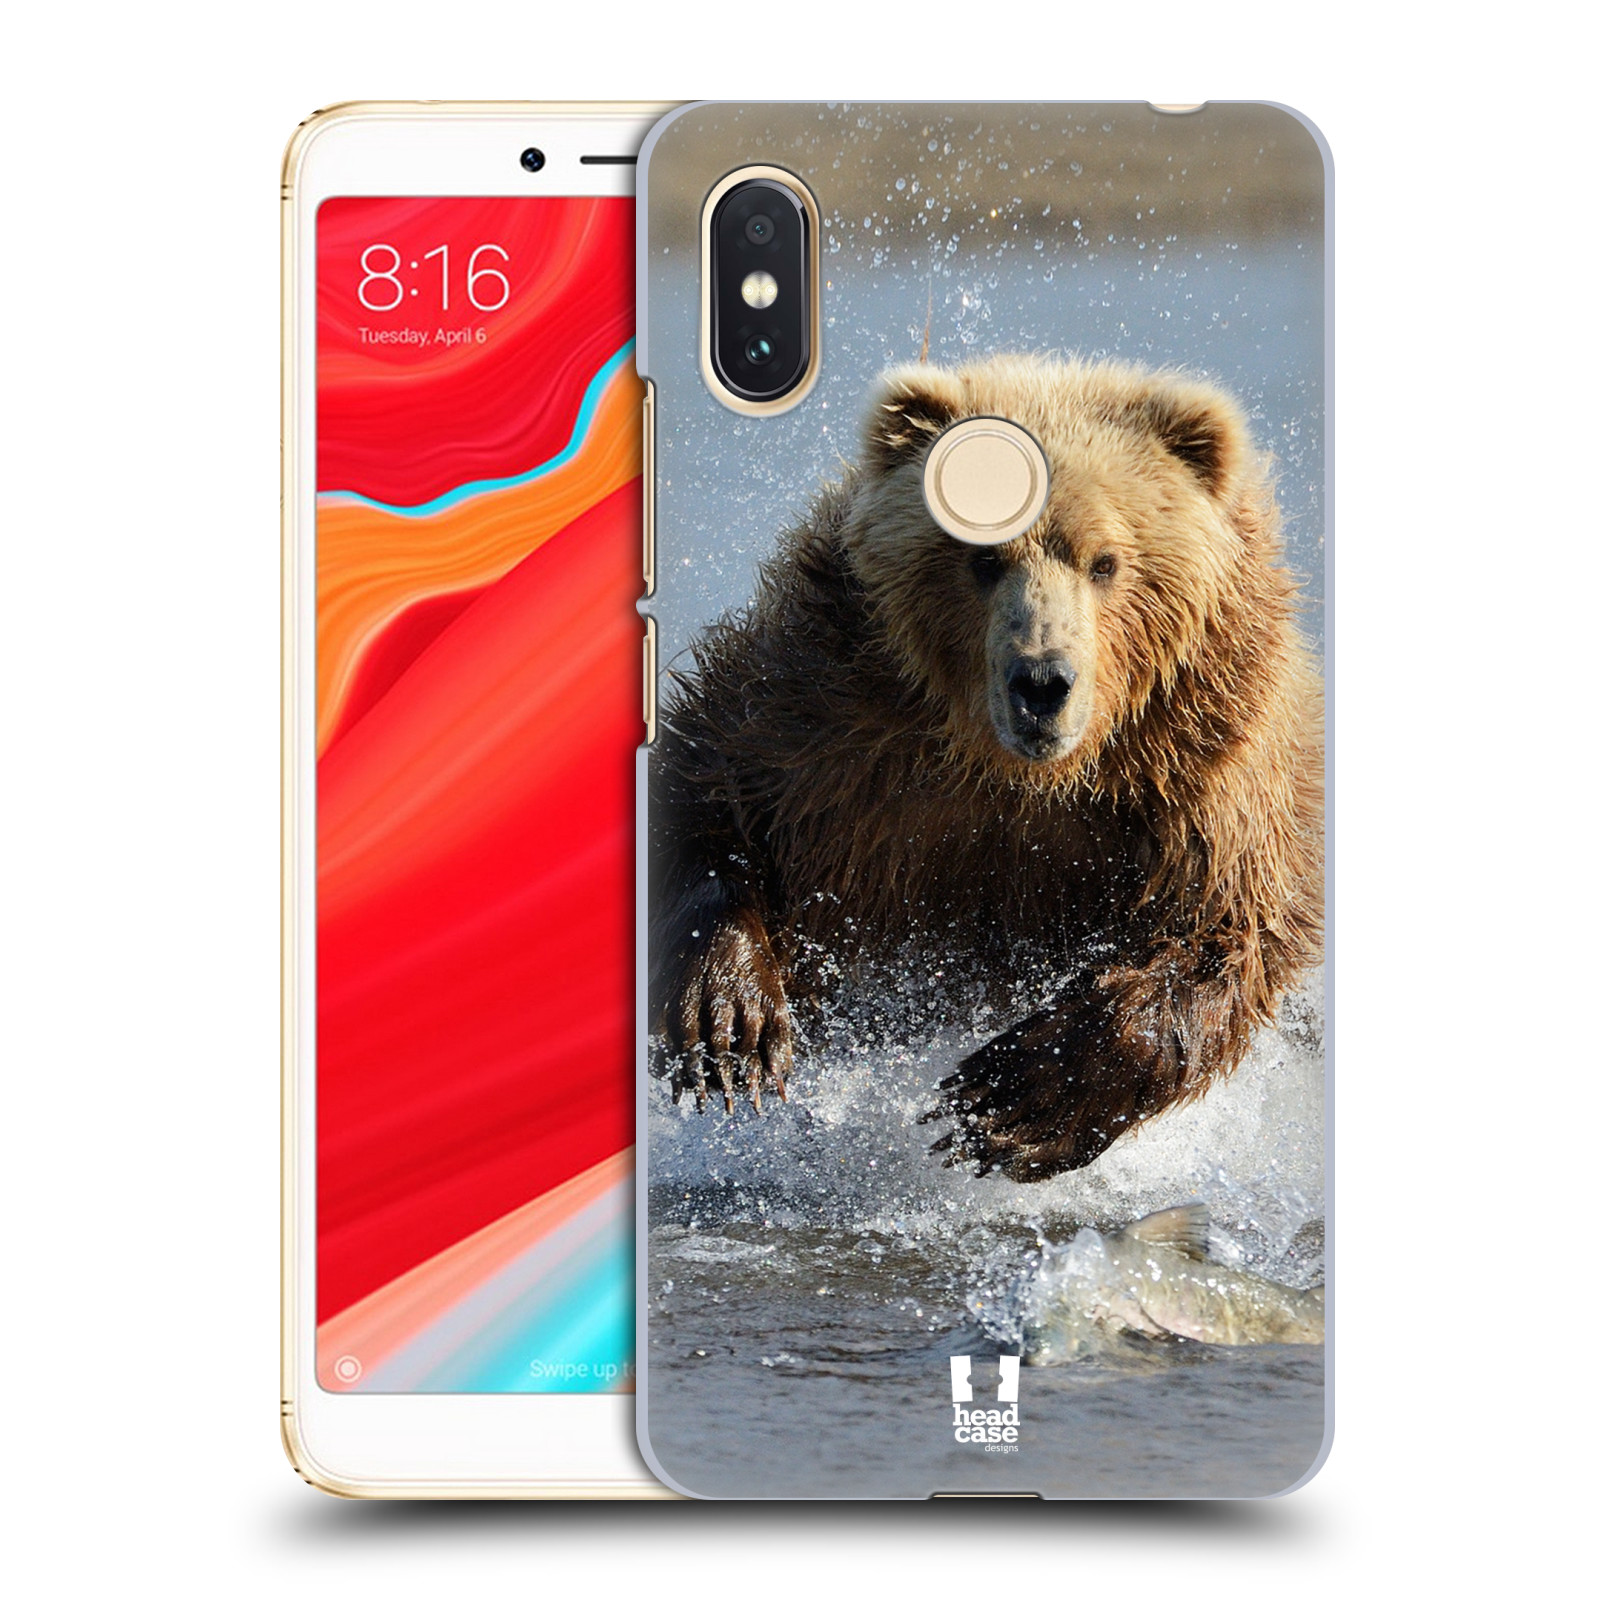 HEAD CASE plastový obal na mobil Xiaomi Redmi S2 vzor Divočina, Divoký život a zvířata foto MEDVĚD GRIZZLY HŇEDÁ